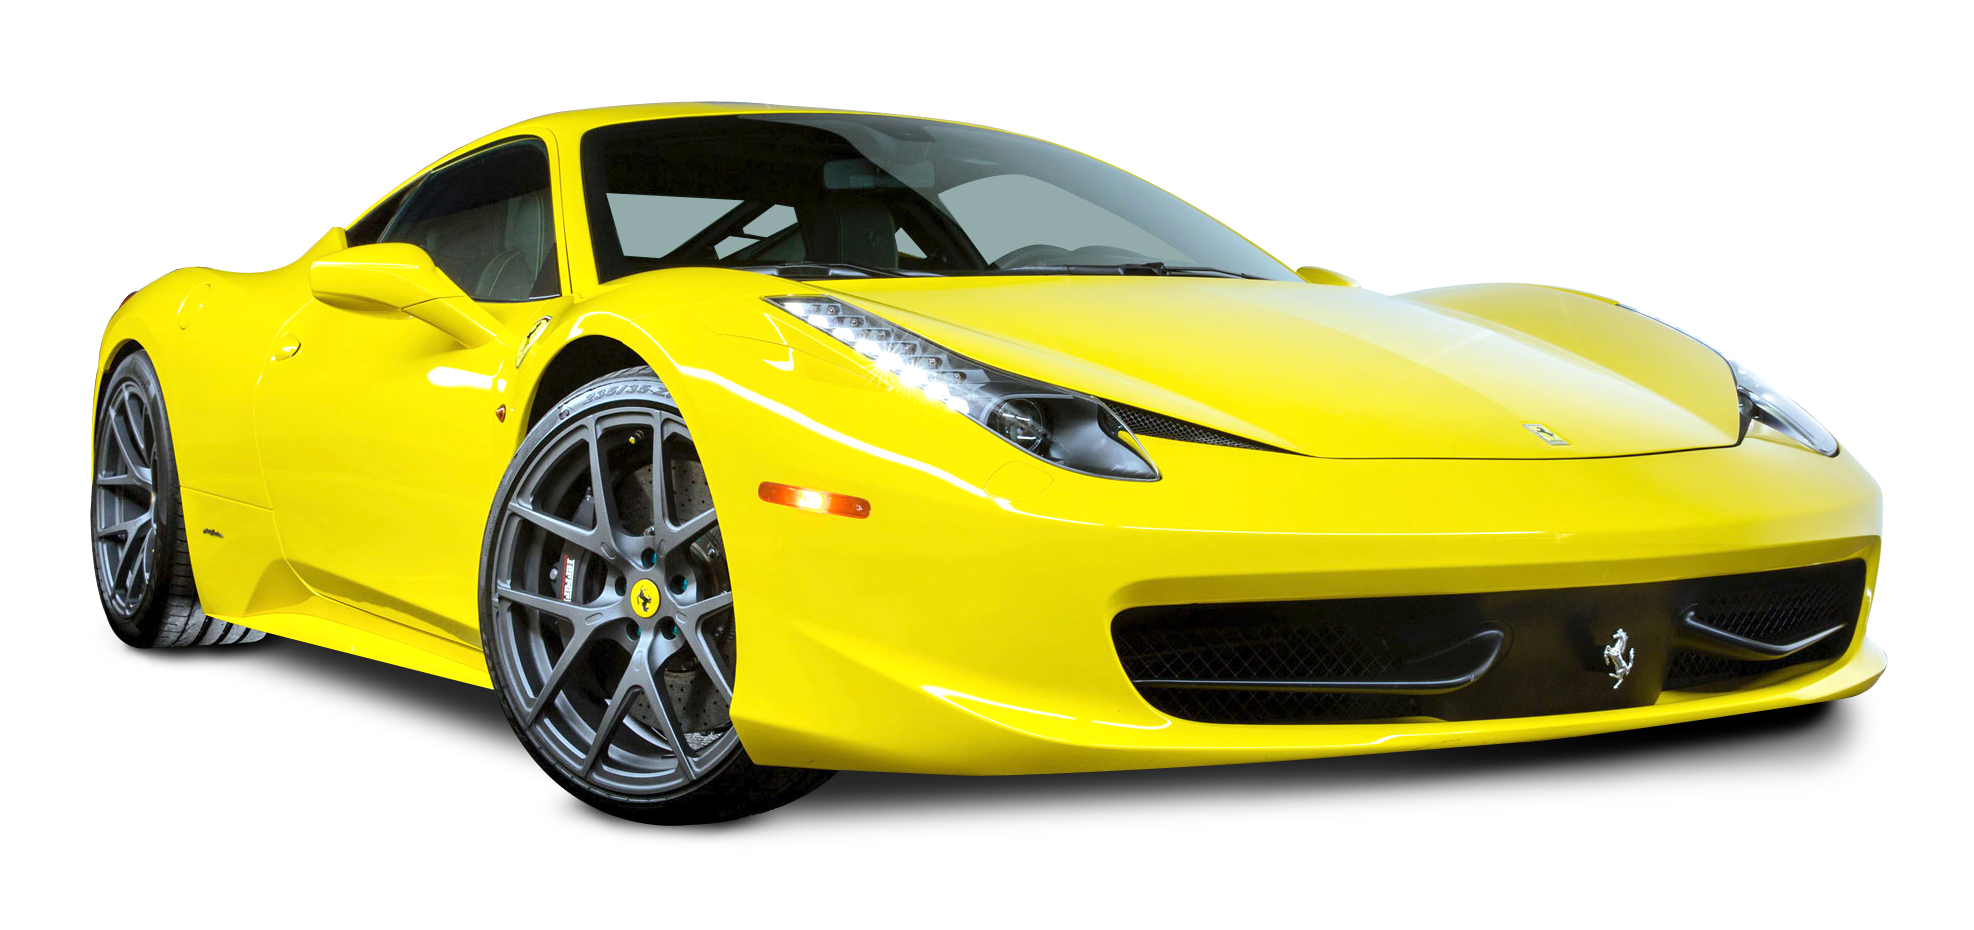 ภาพถ่าย Ferrari PNG สีเหลือง